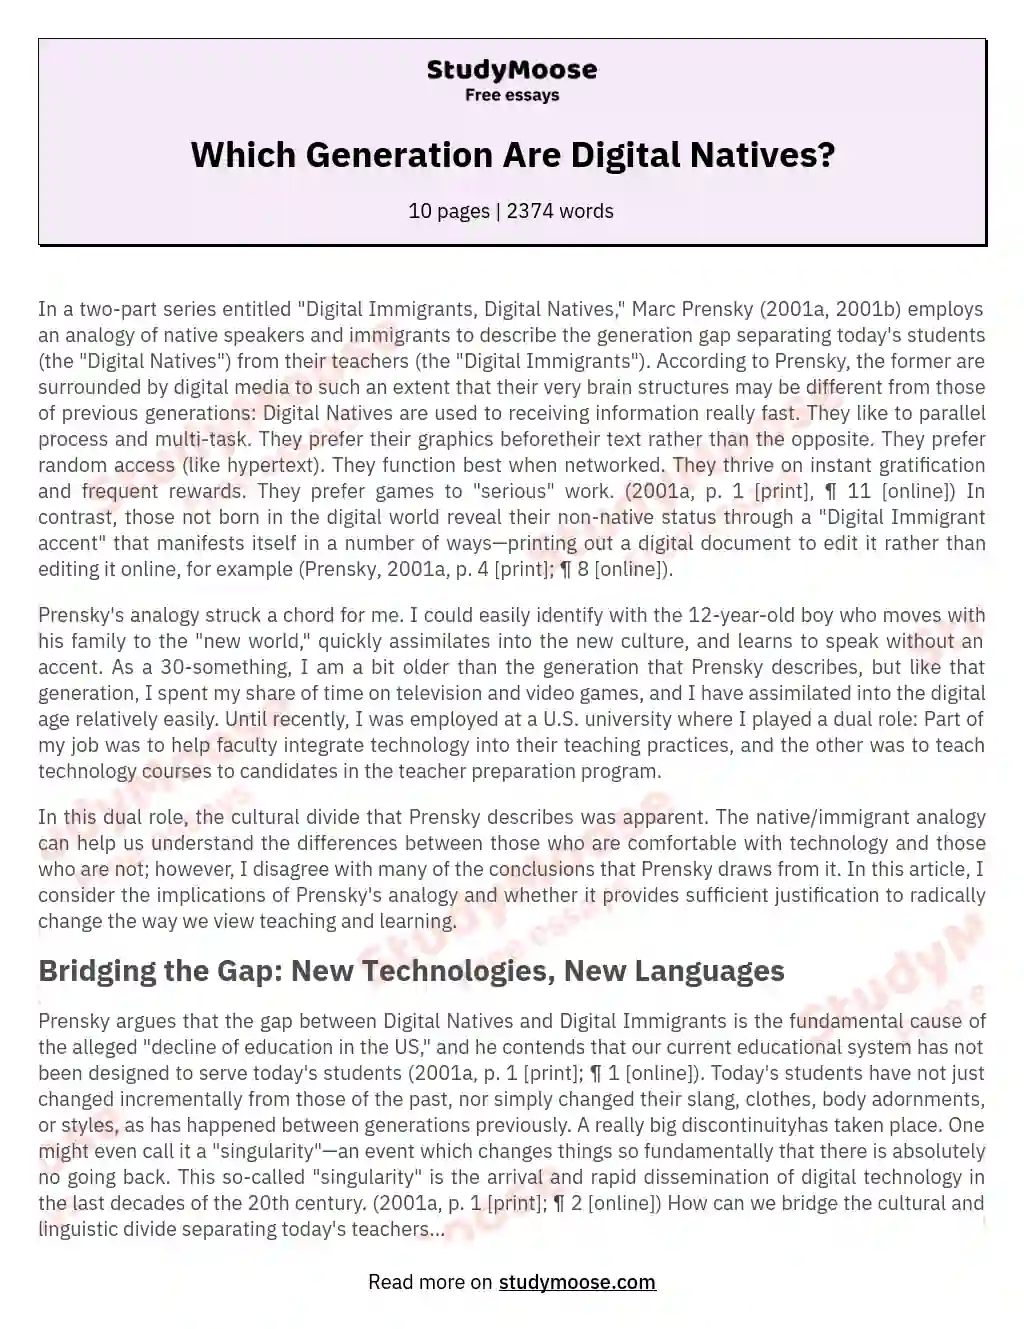 digital natives and digital immigrants essay